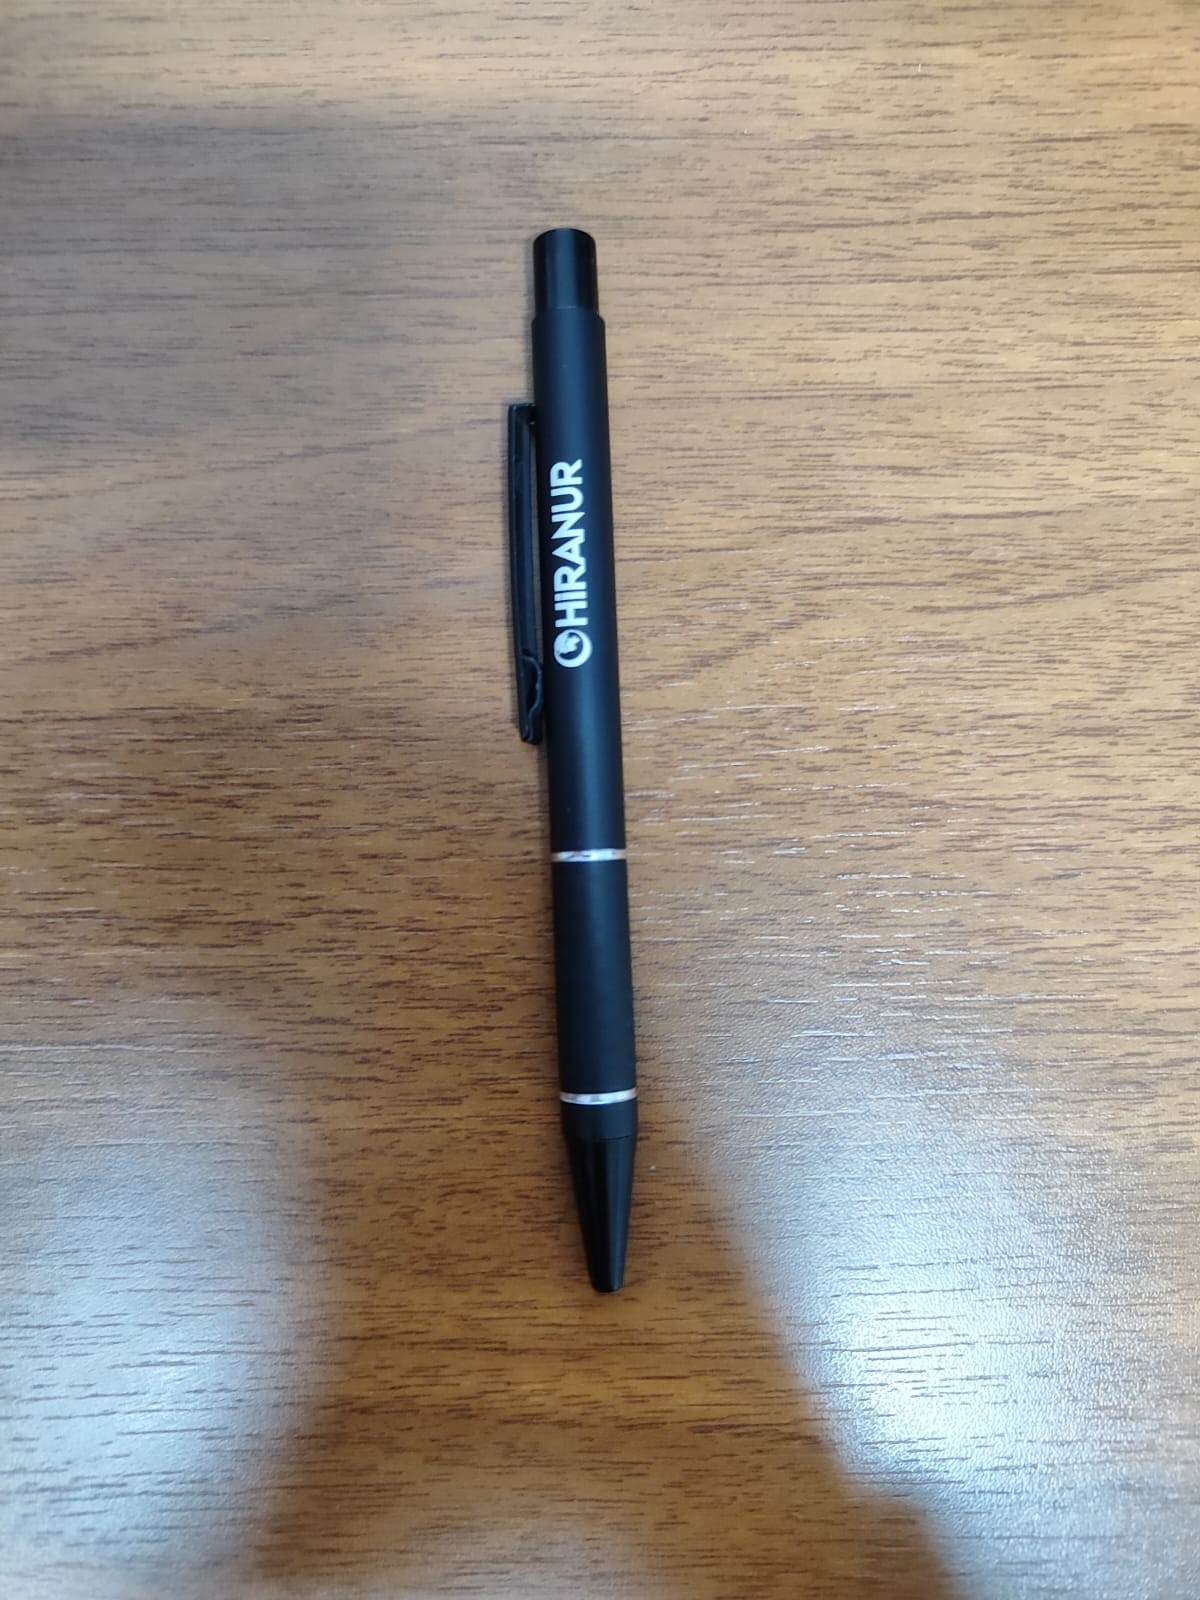 Kalem - Hiranur Kalem Hediyelik Eşya